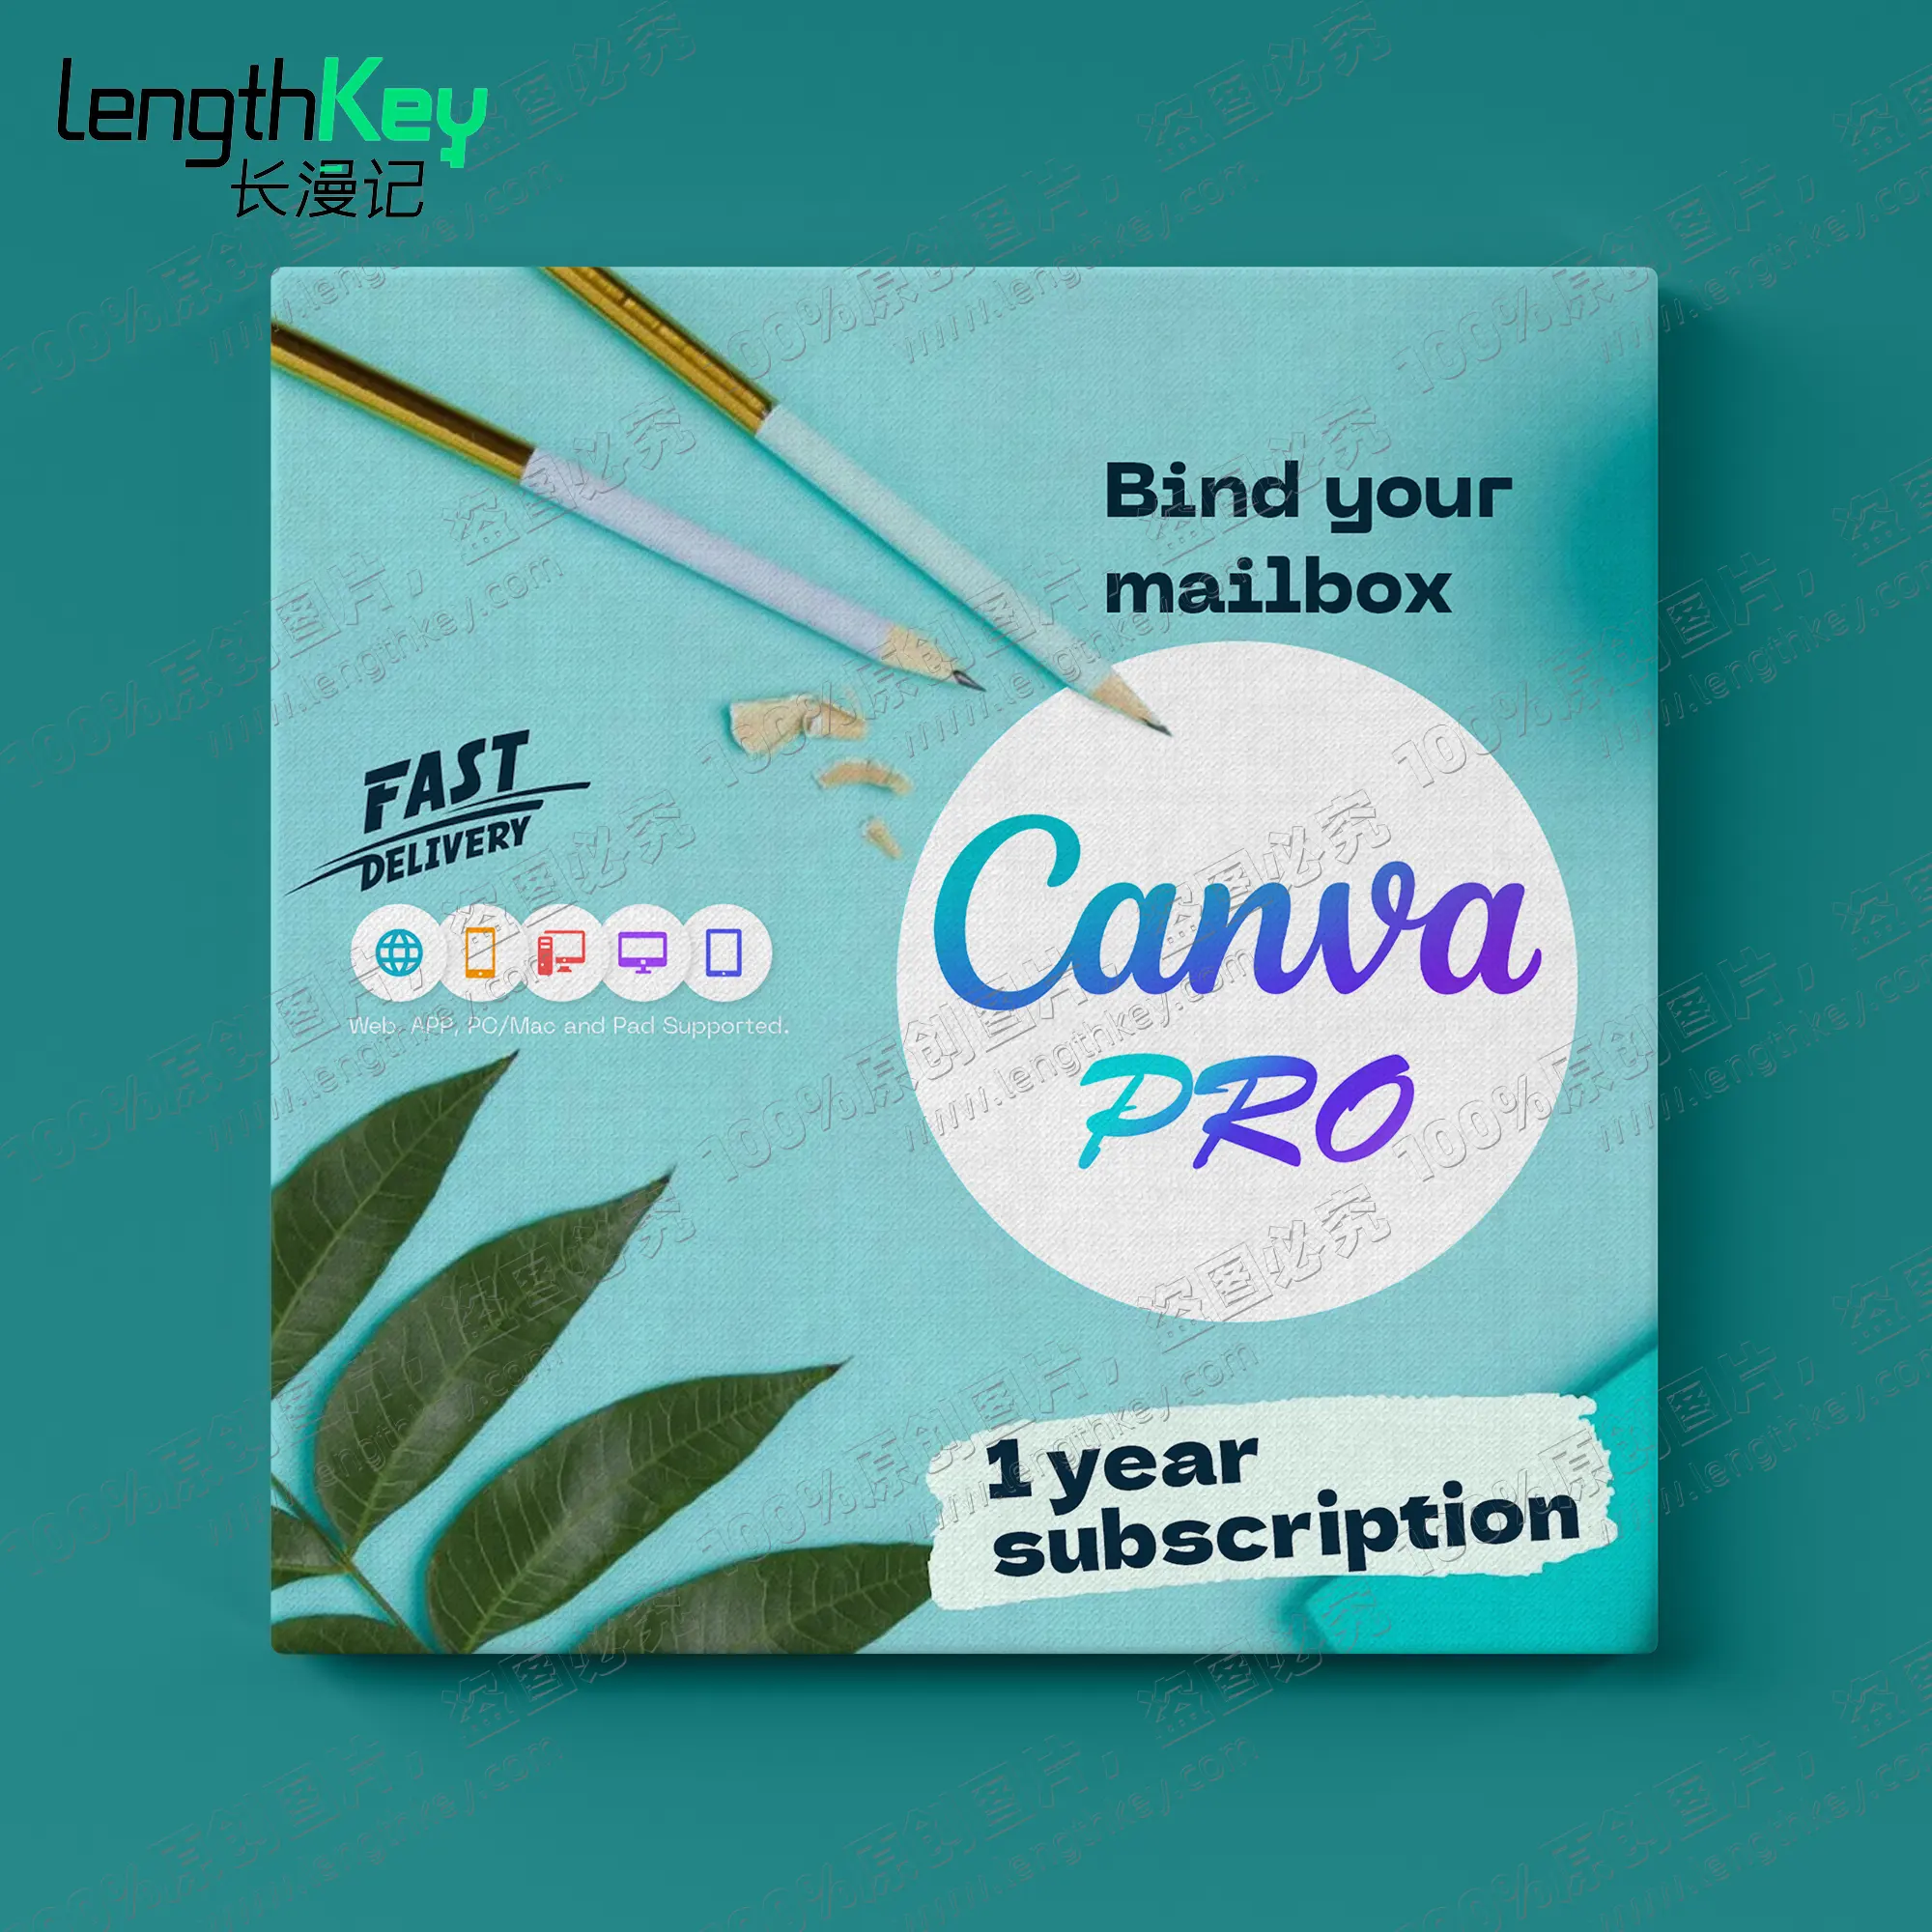 24/7 حساب خاص باستخدام Canva Pro الانترنت اشتراك لمدة عام واحد للاستخدام التجاري برامج تصميم جرافيك اصلية رسمية على الانترنت غير تعليمية